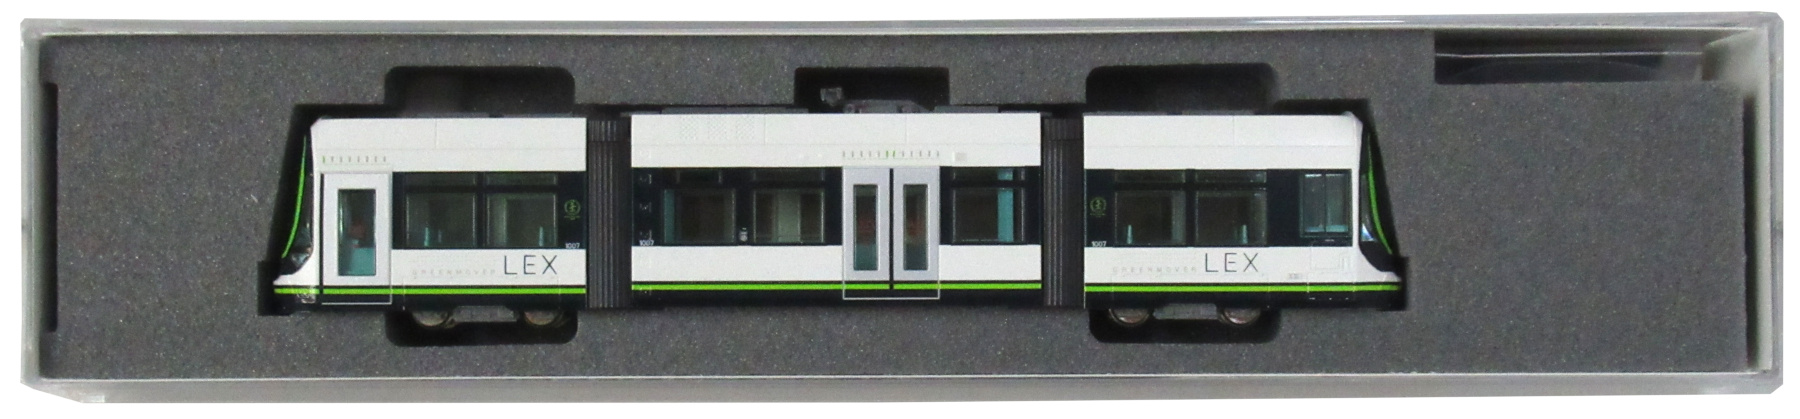 14-804-1 広島電鉄1000形 LEX